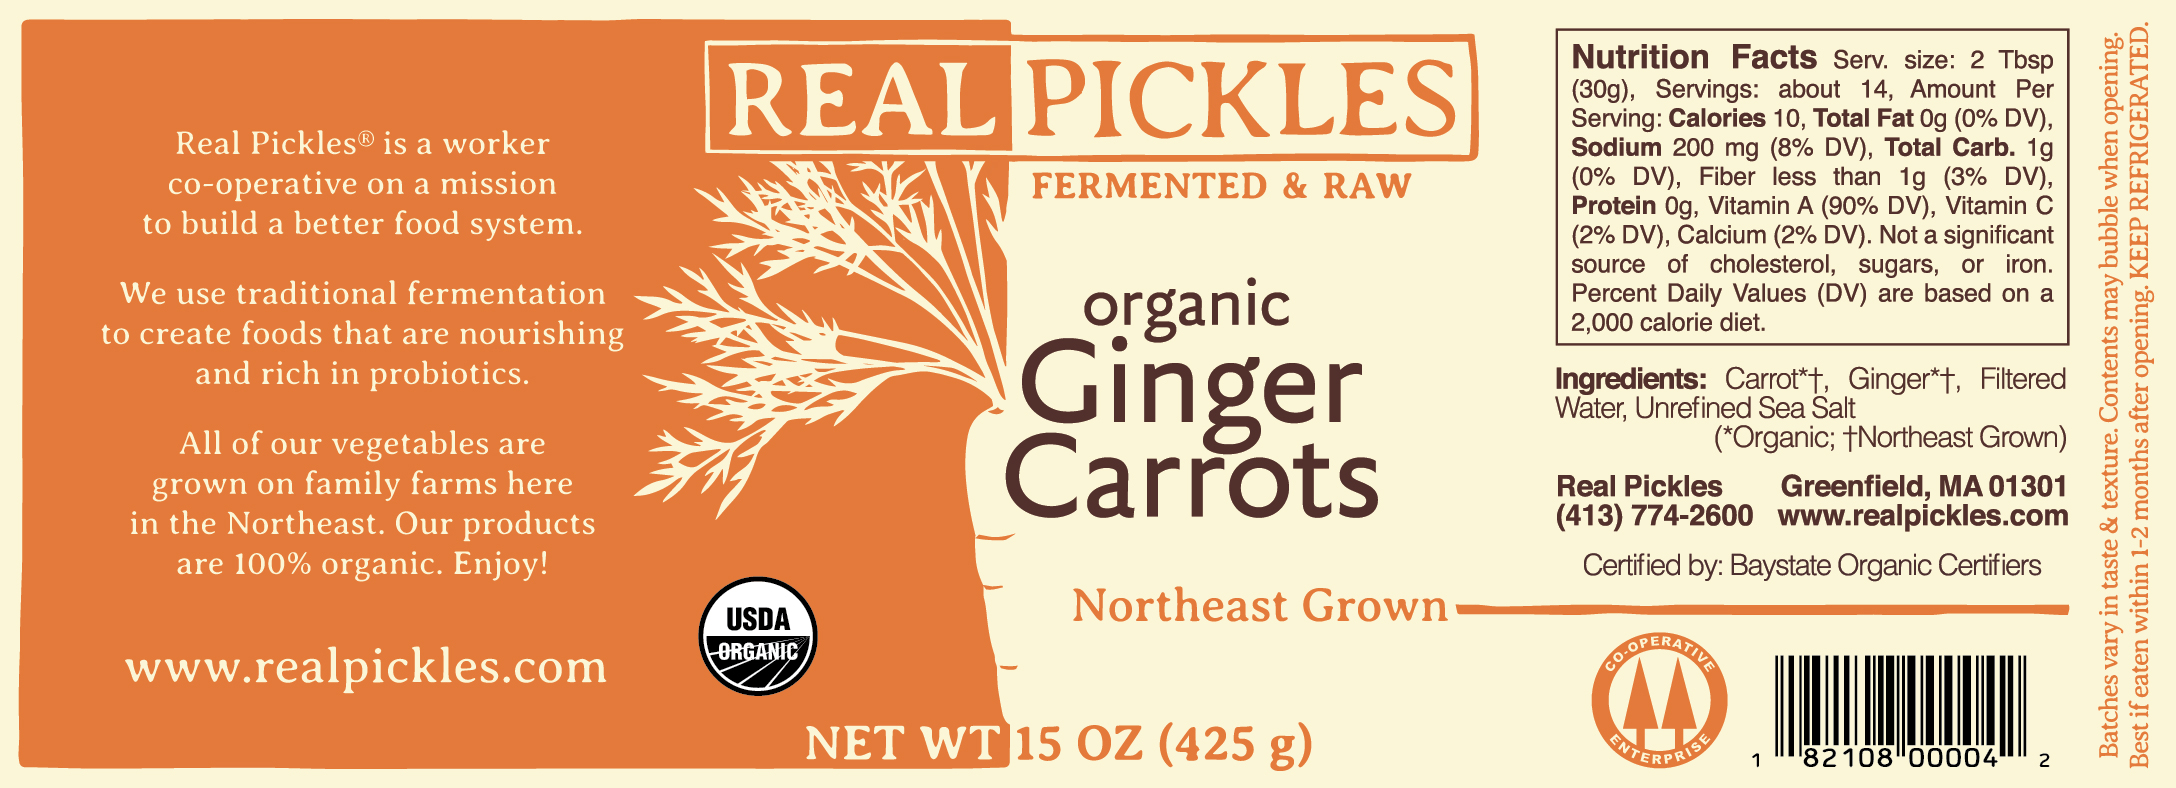 RP Ginger Carrots v4 (outlines)-01